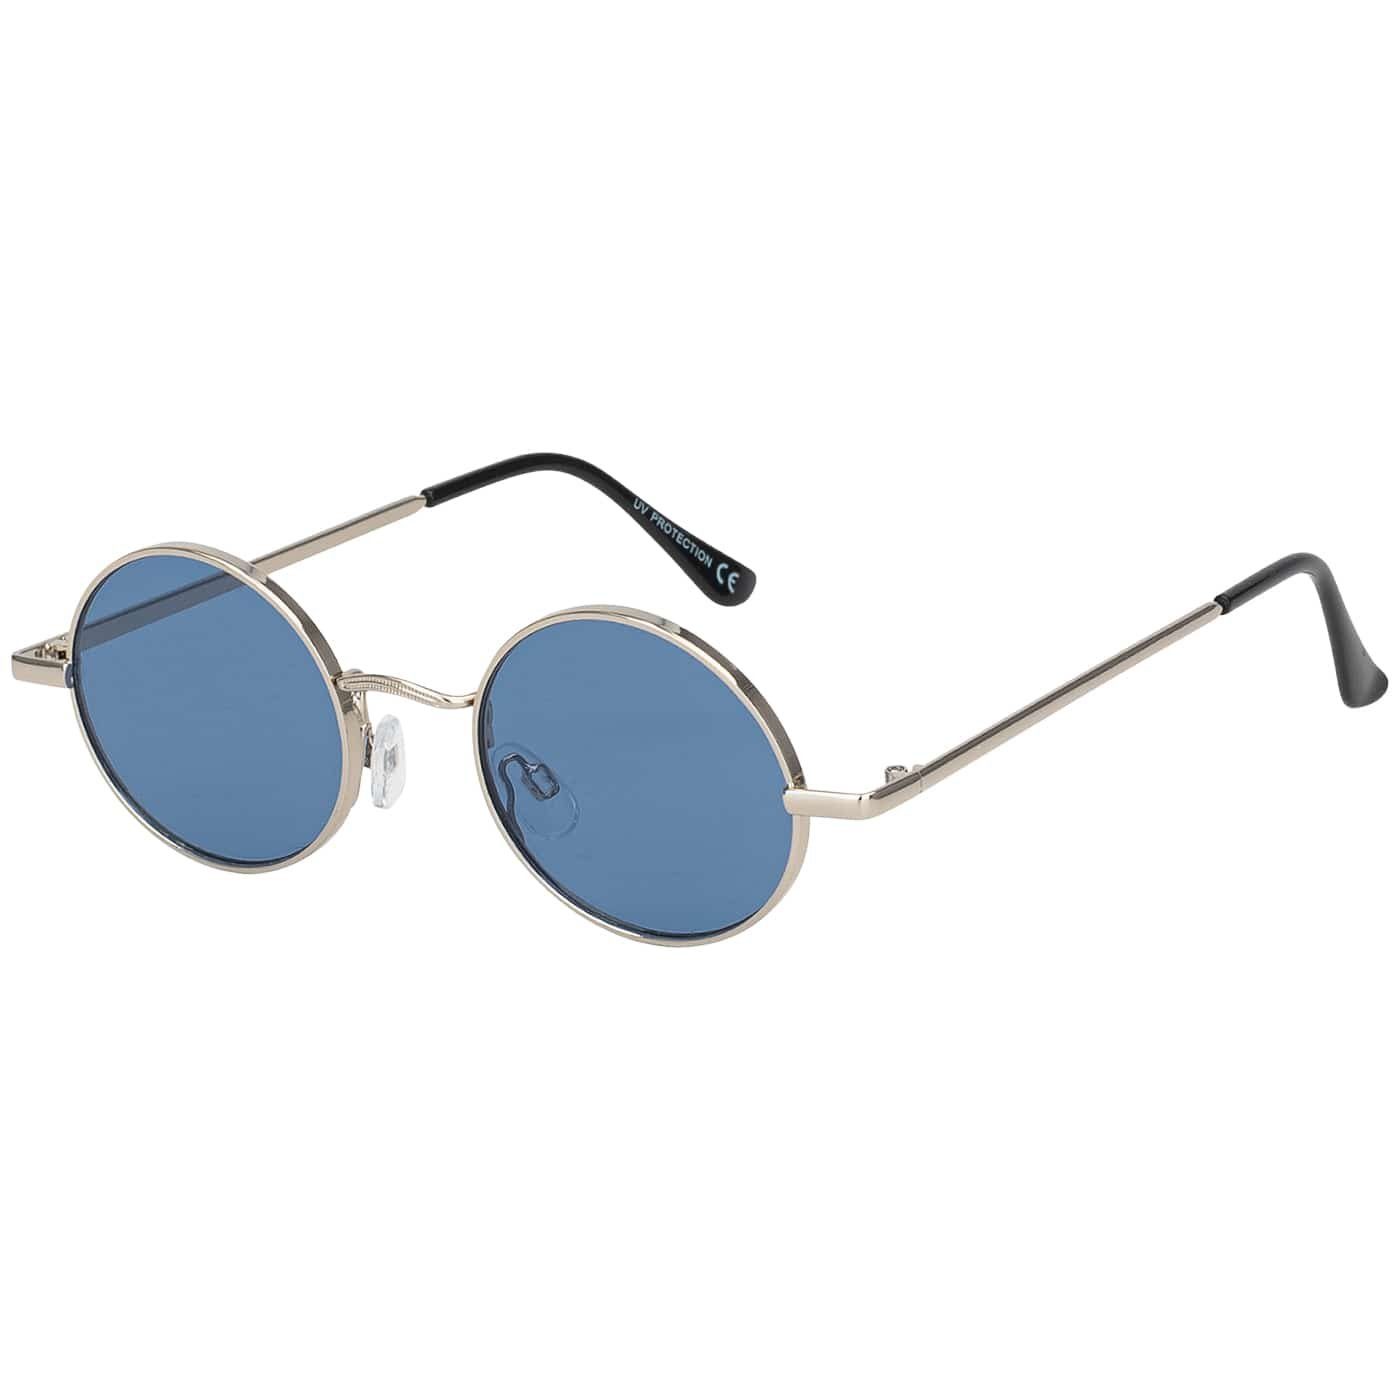 Sonnenbrille Damen UV400 mit Kristalldekor Blau